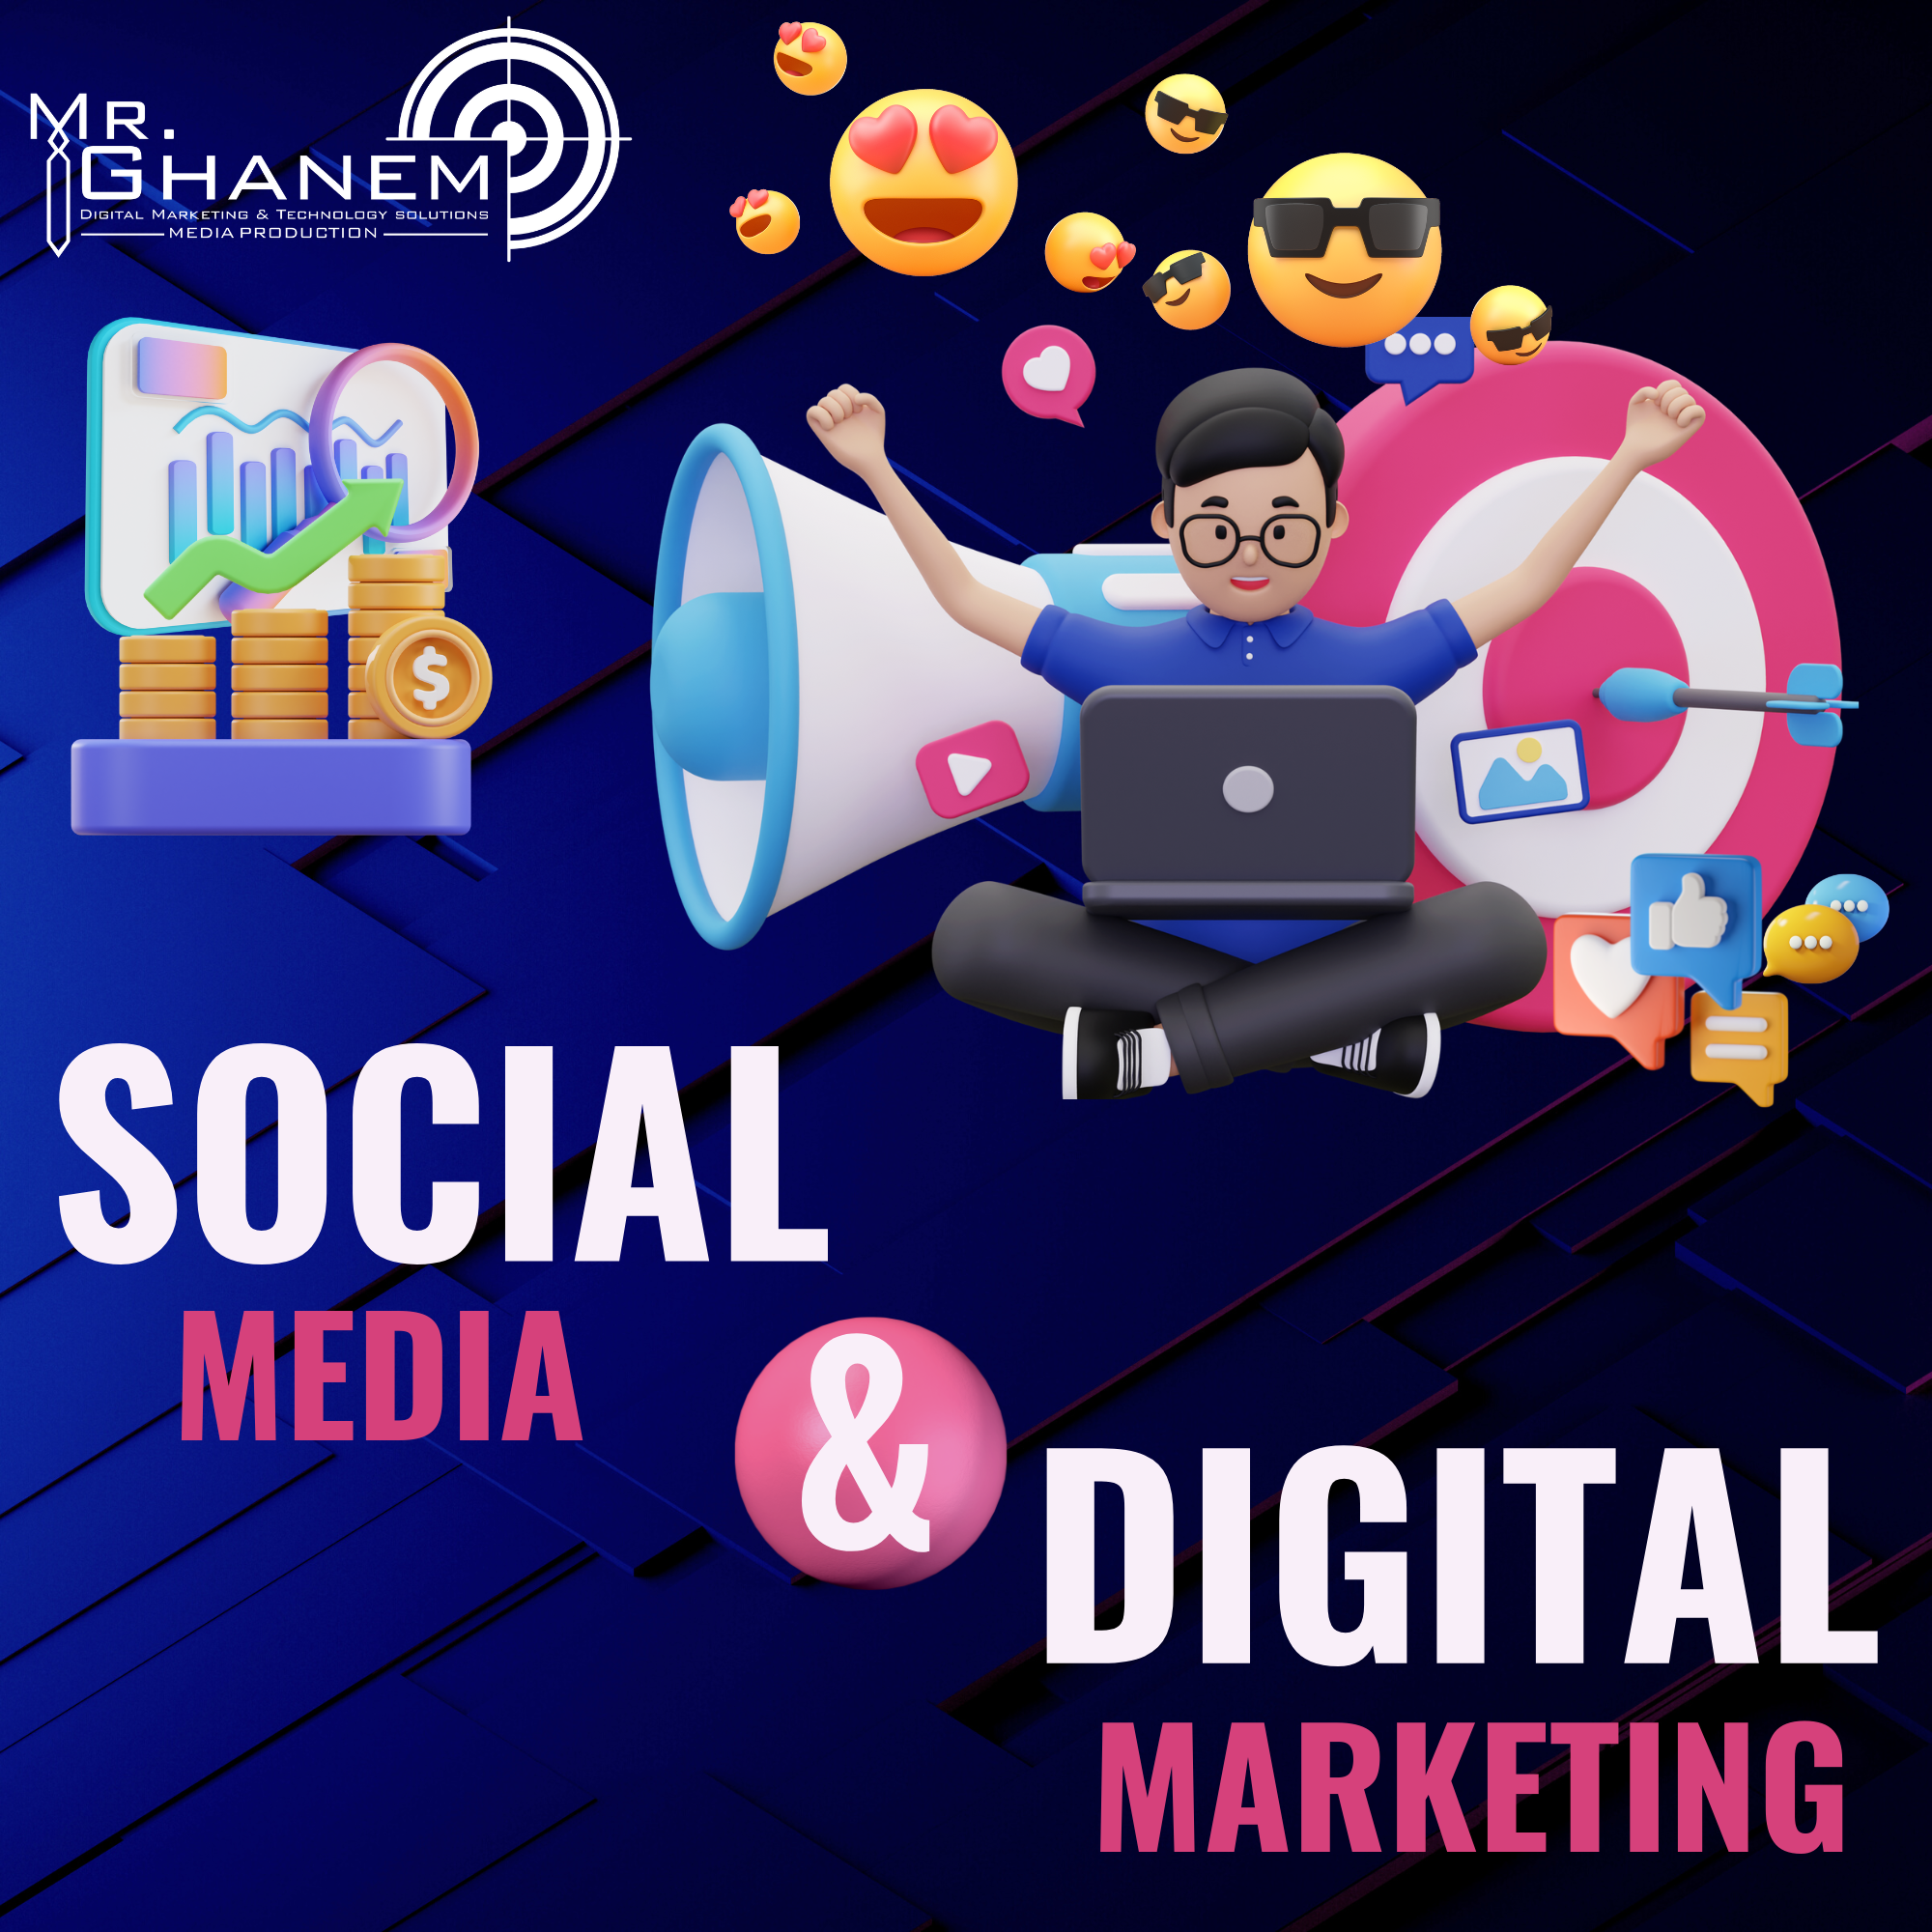 Social Media & Digital Marketing